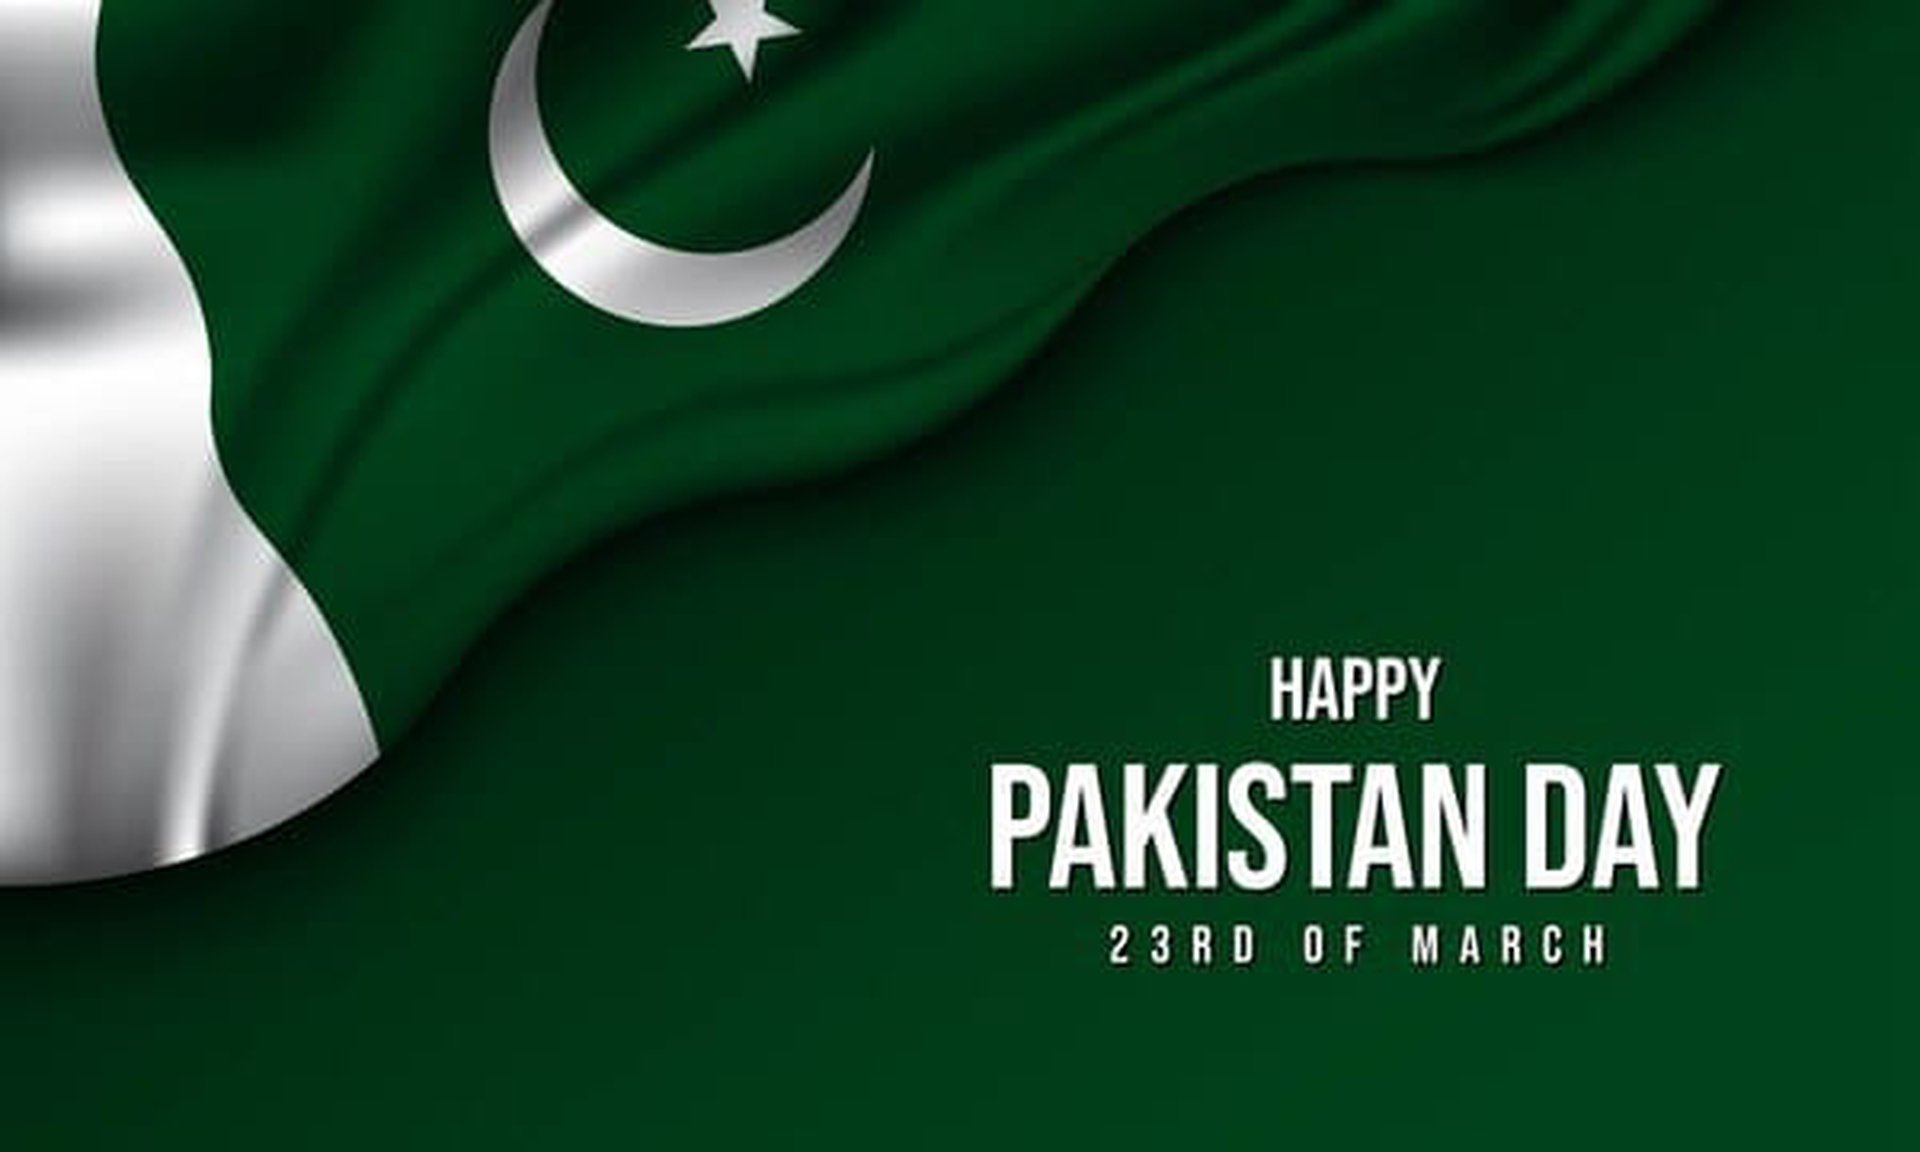 Дорогие студенты из Пакистана, поздравляем вас с национальным праздником - Днем Пакистана